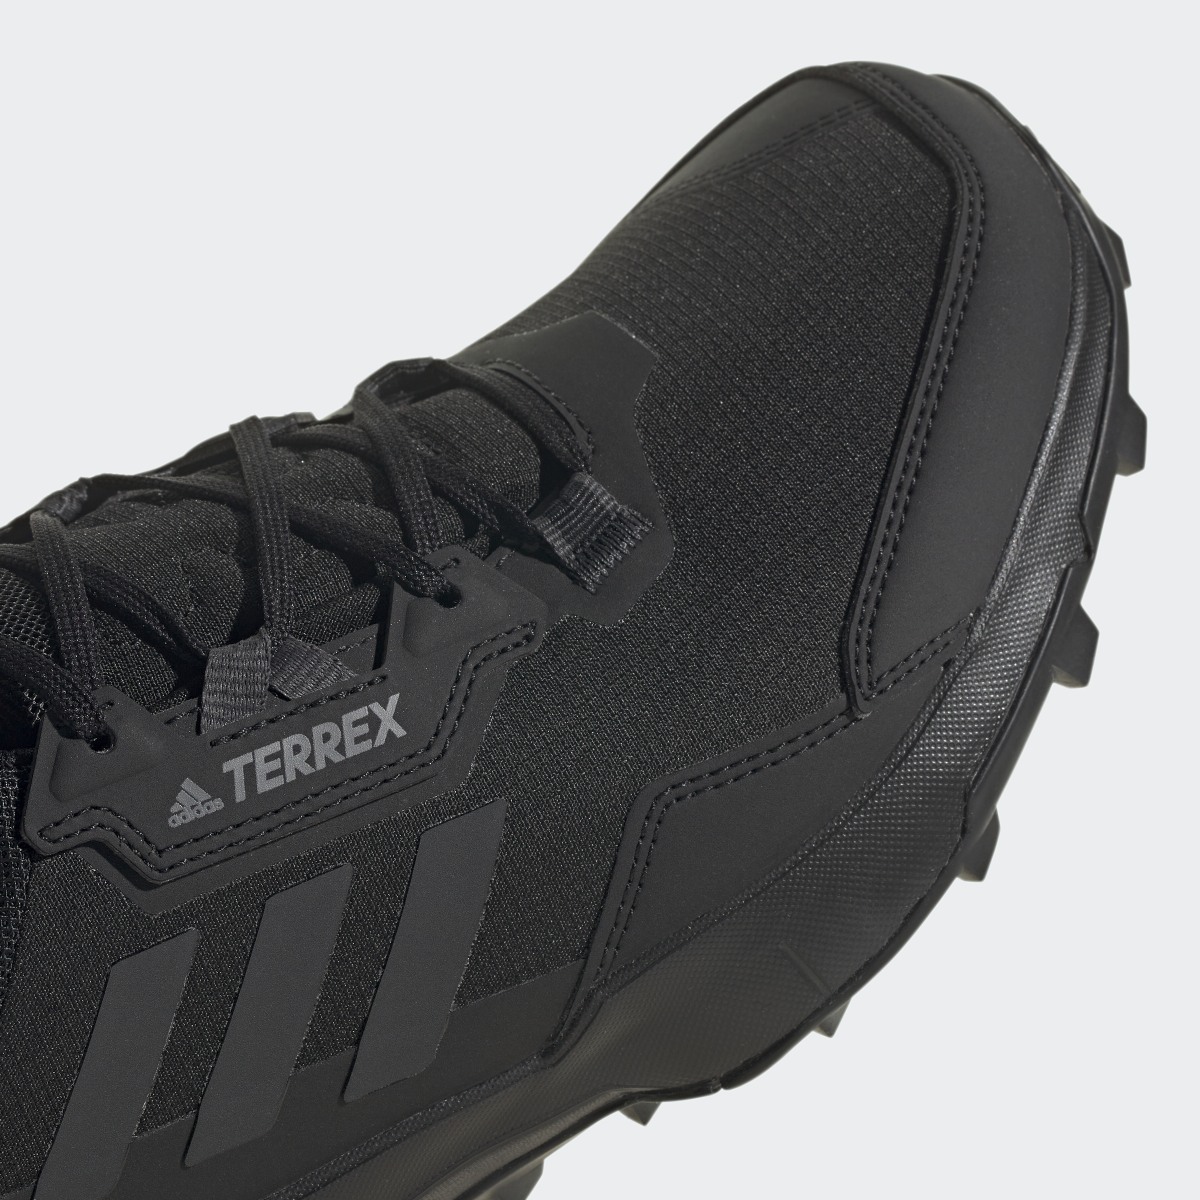 Adidas Sapatilhas de Caminhada AX4 GORE-TEX TERREX. 11